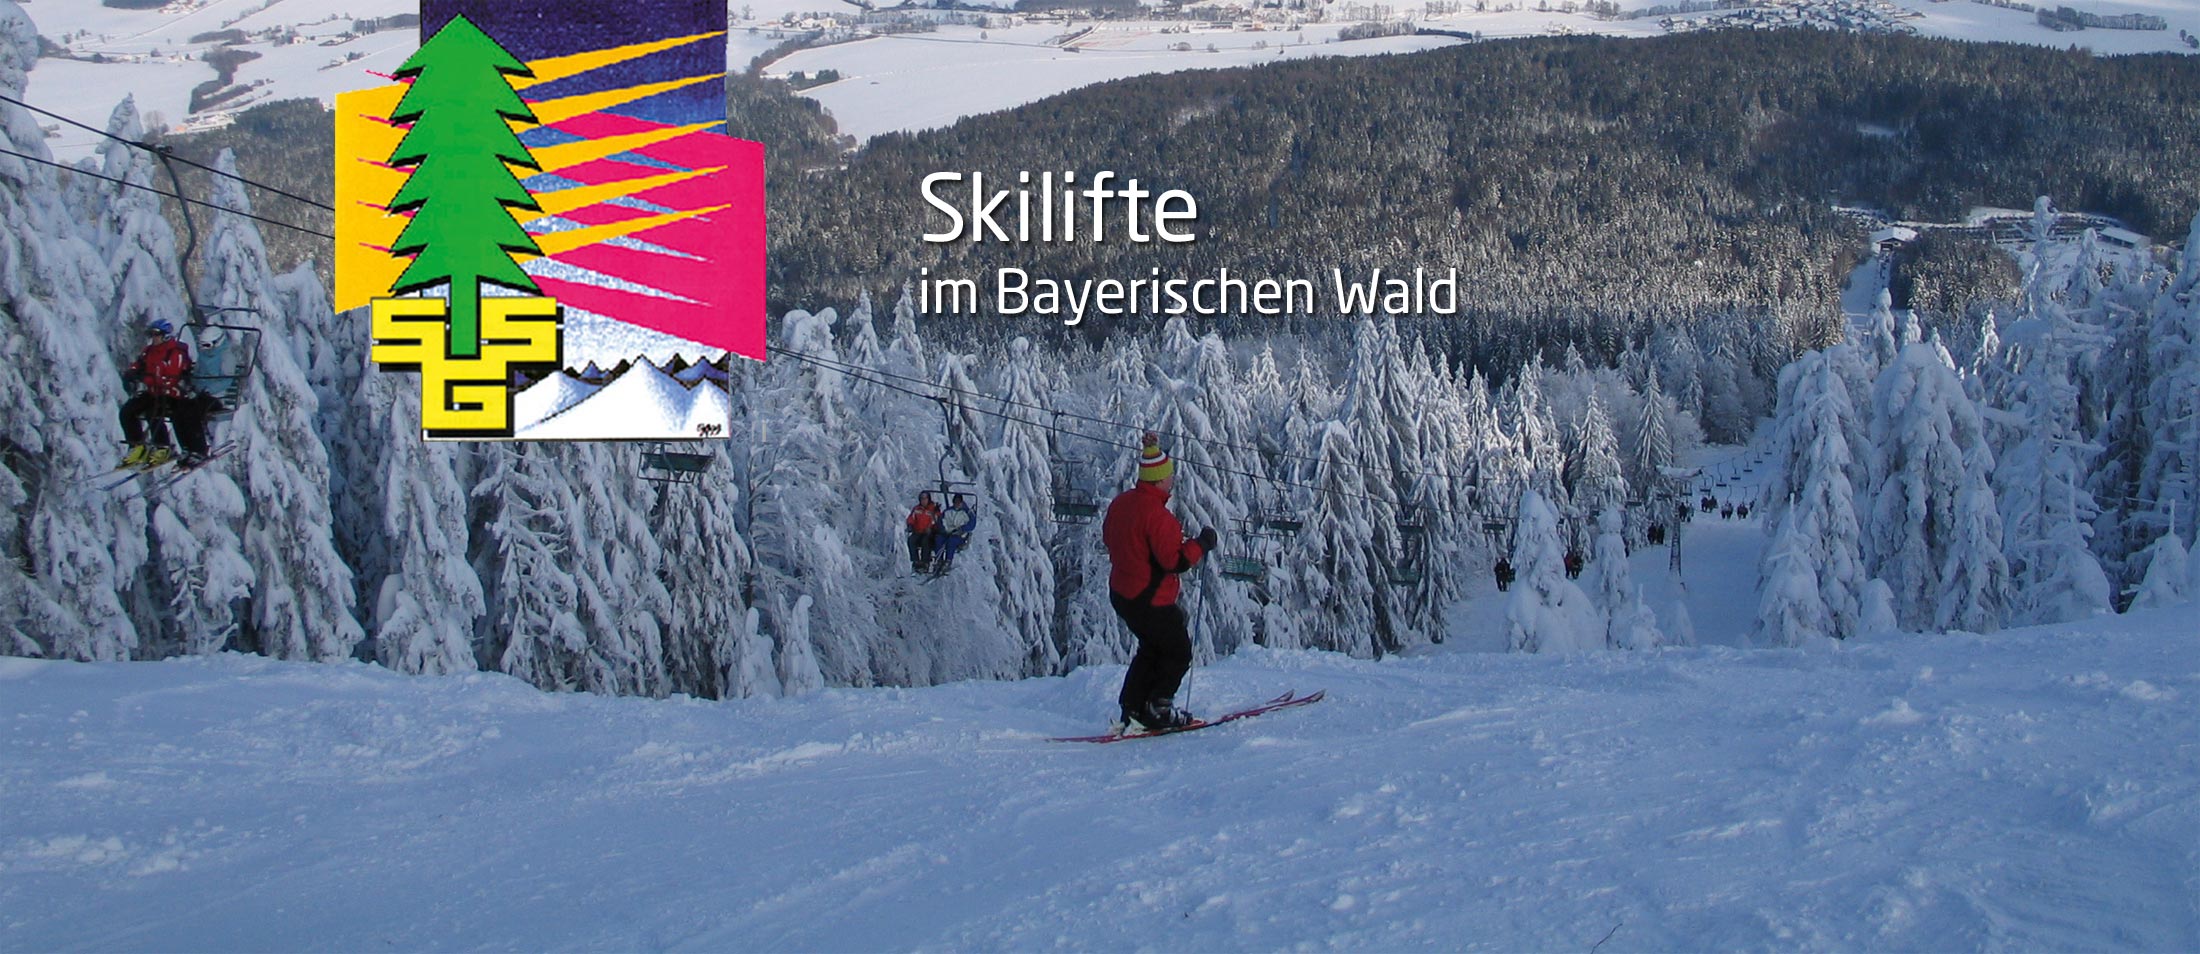 Skilifte im Bayerischen Wald